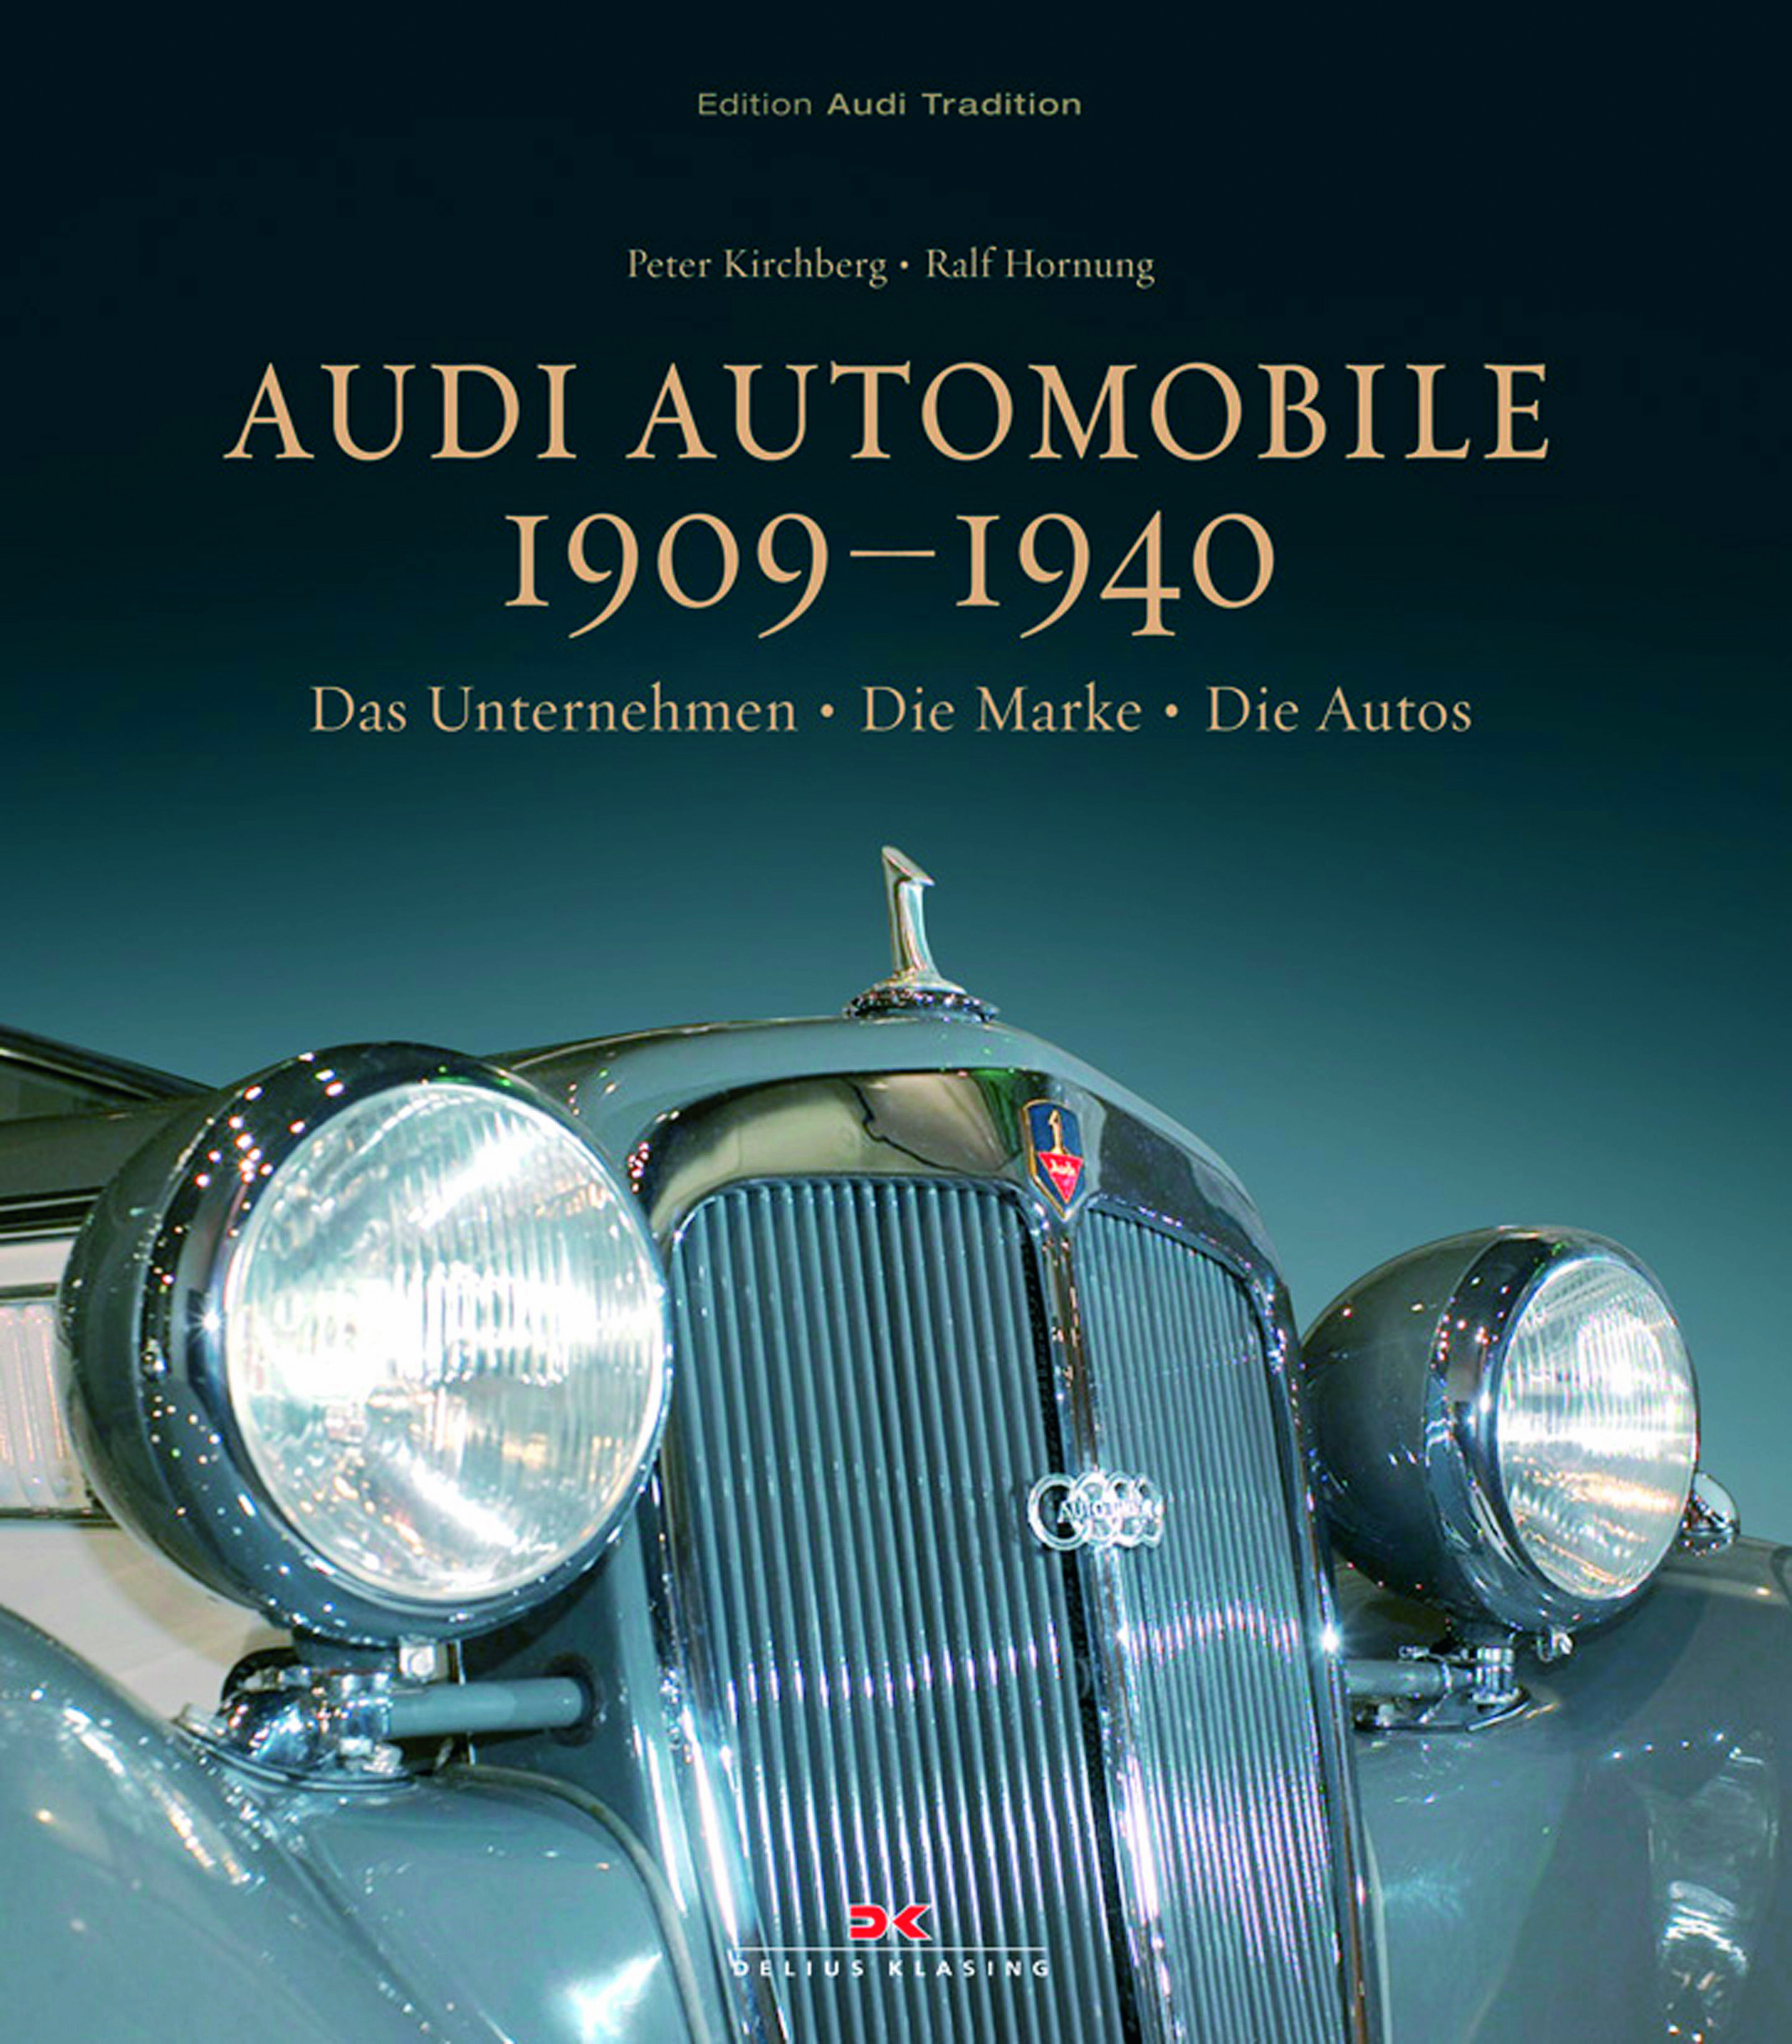 "Audi Automobile 1909 - 1940"